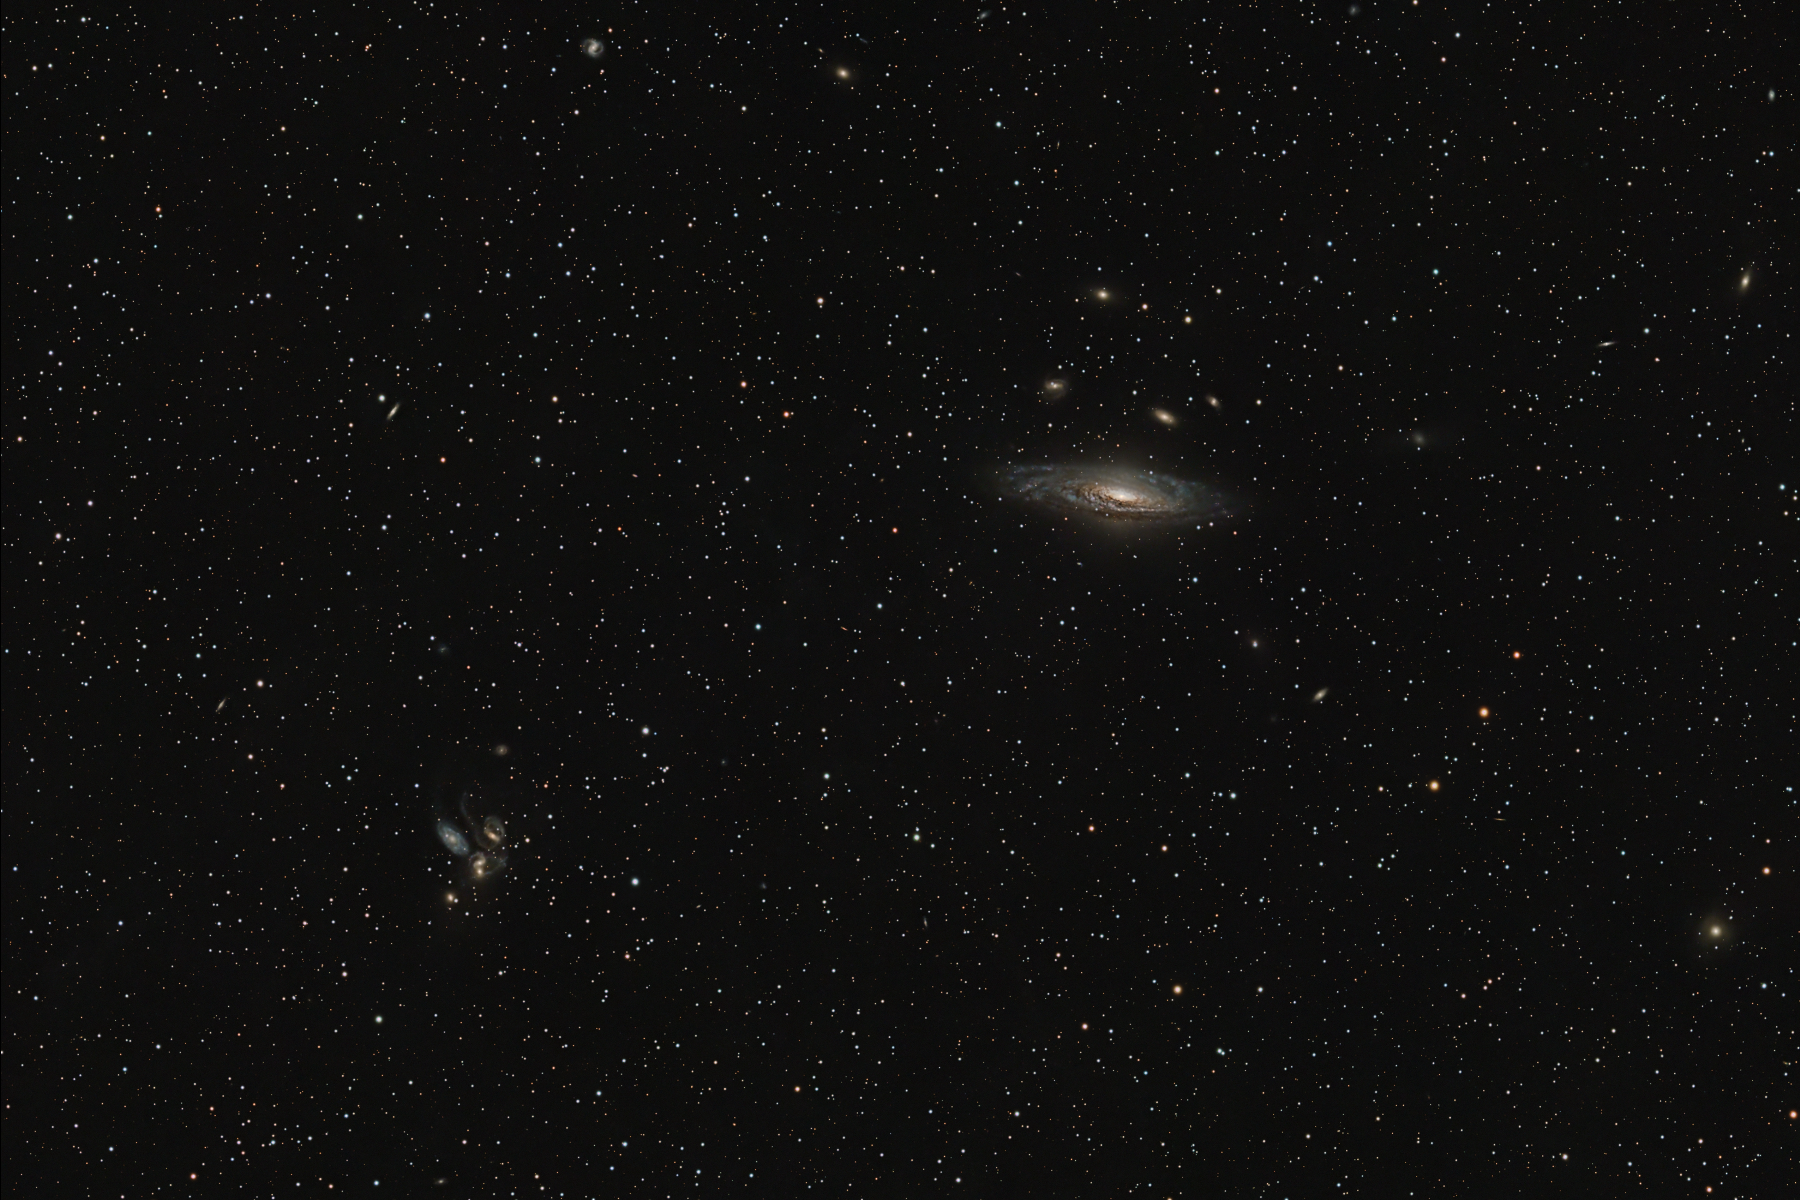 NGC 7331 and Arp 319